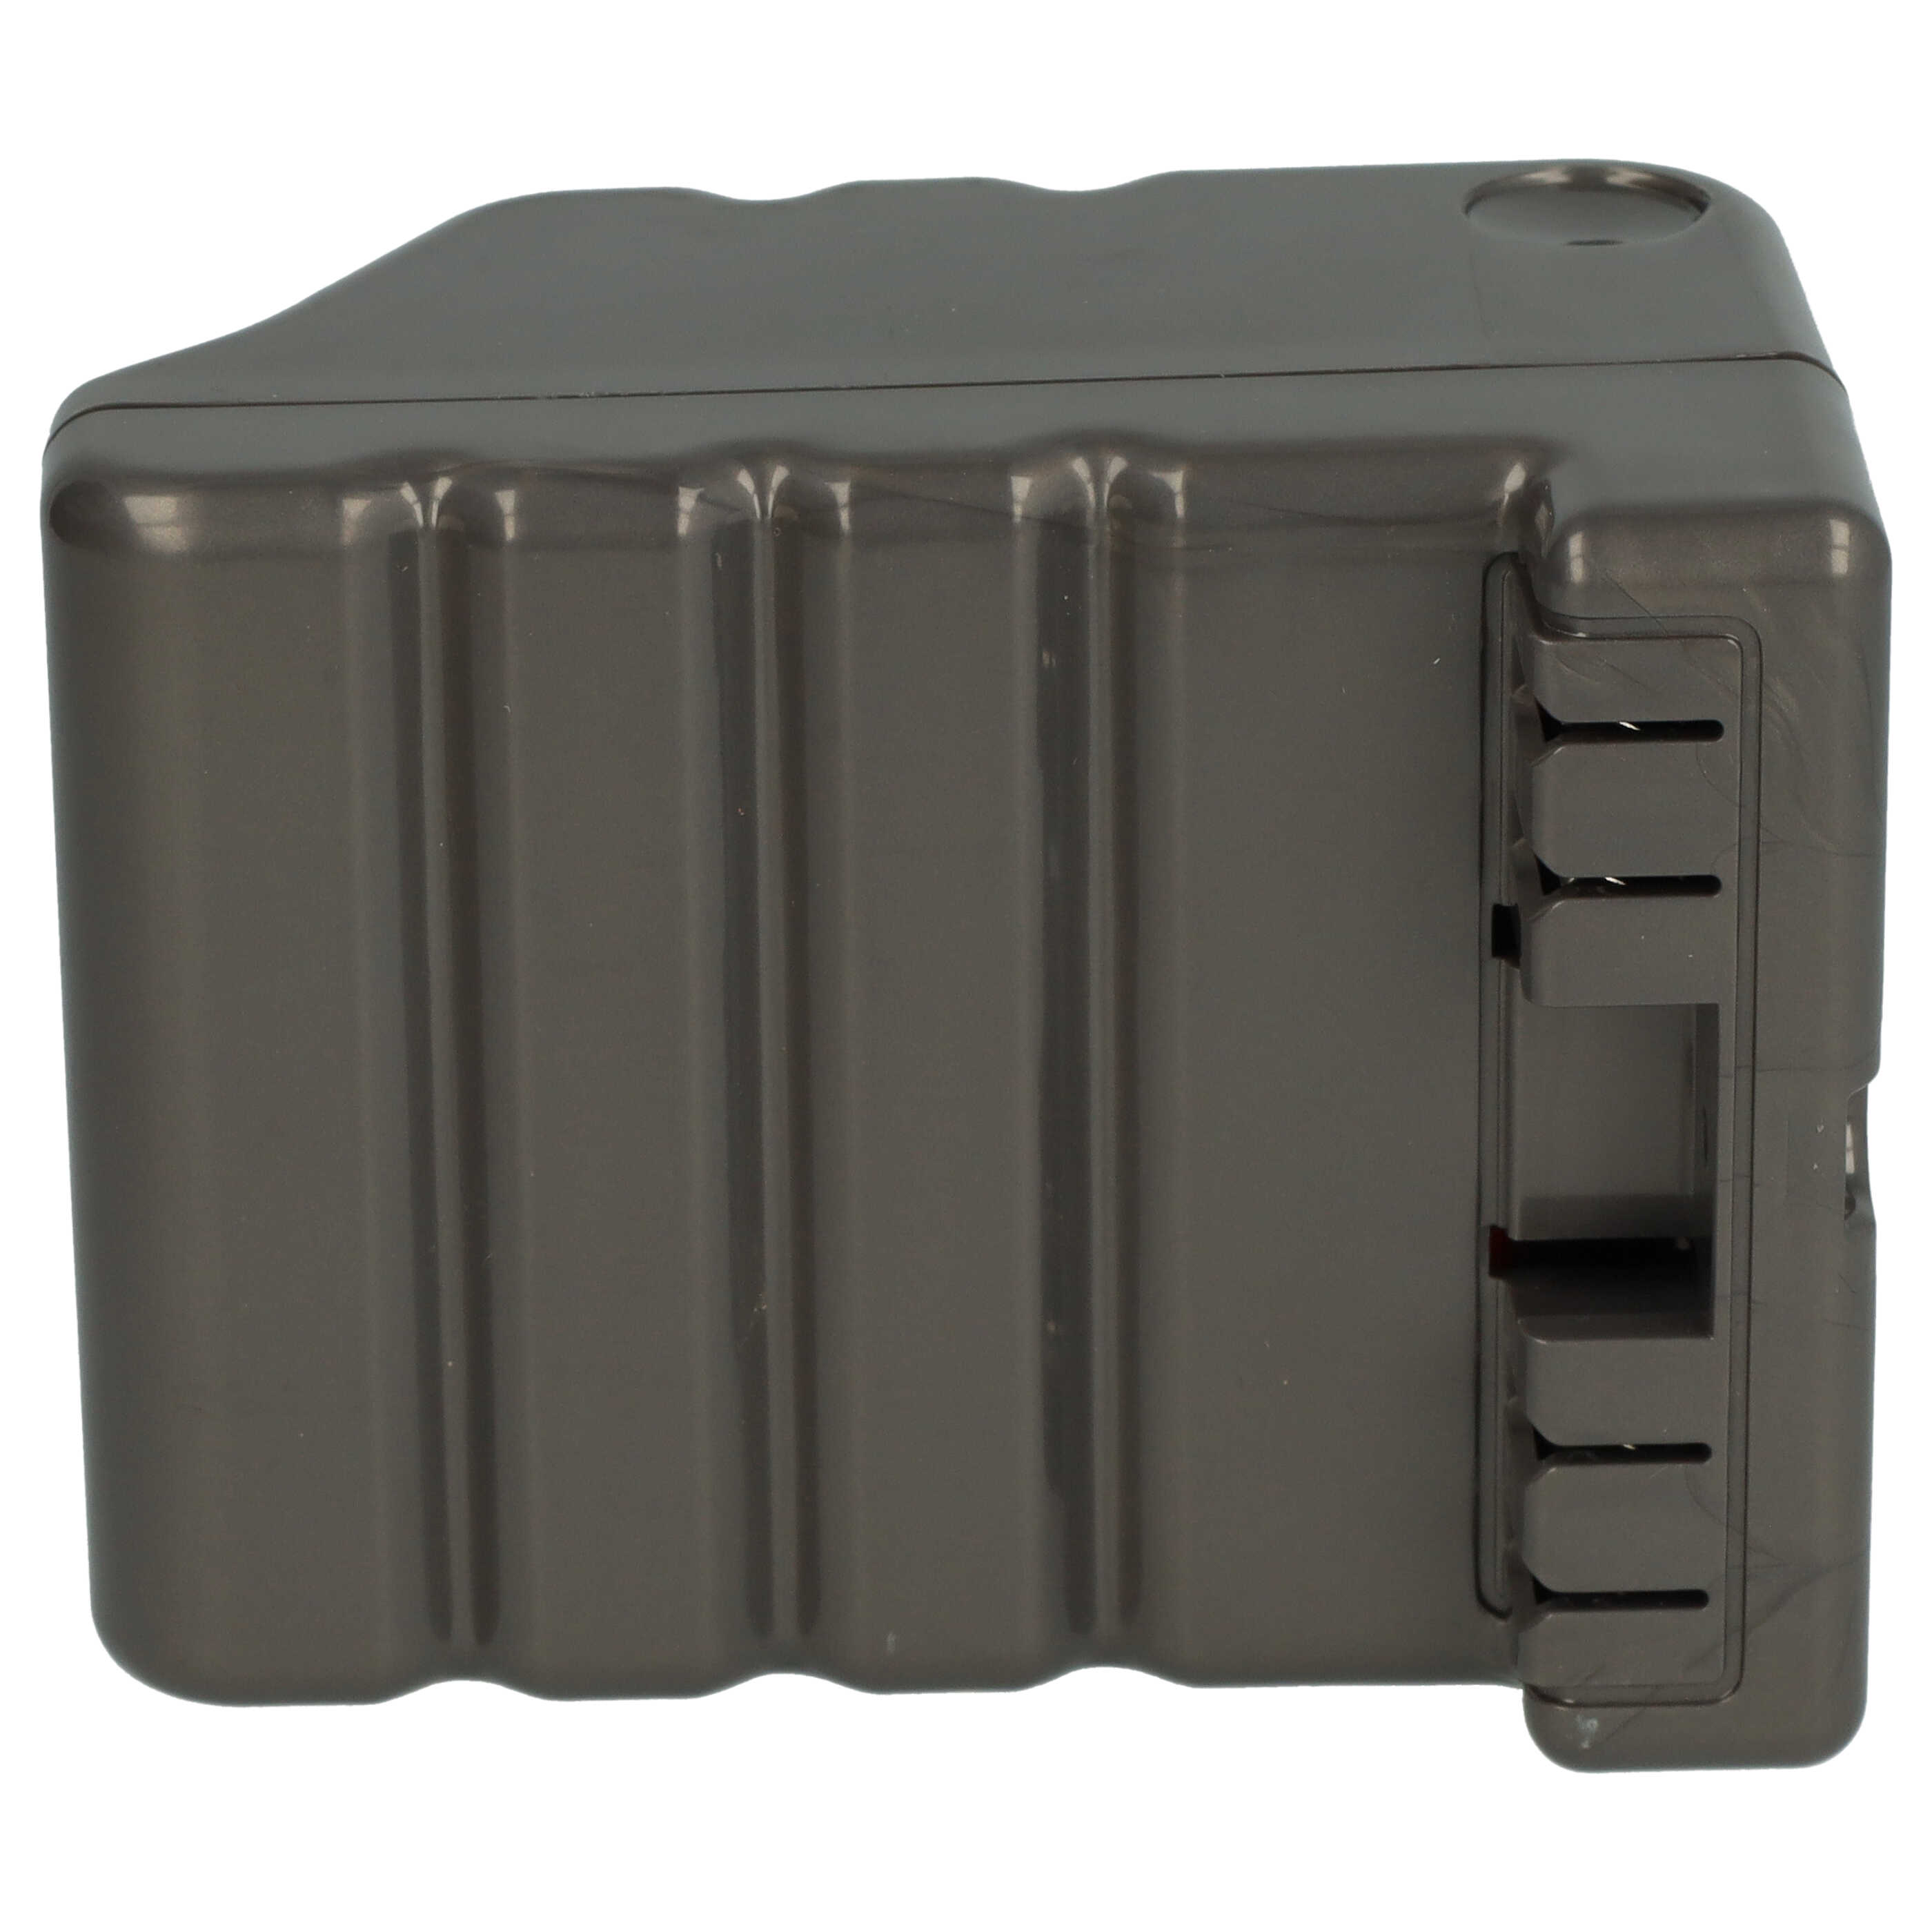 Batterie remplace Dyson 970049-01, 968734-02 pour robot aspirateur - 6600mAh 14,8V Li-ion